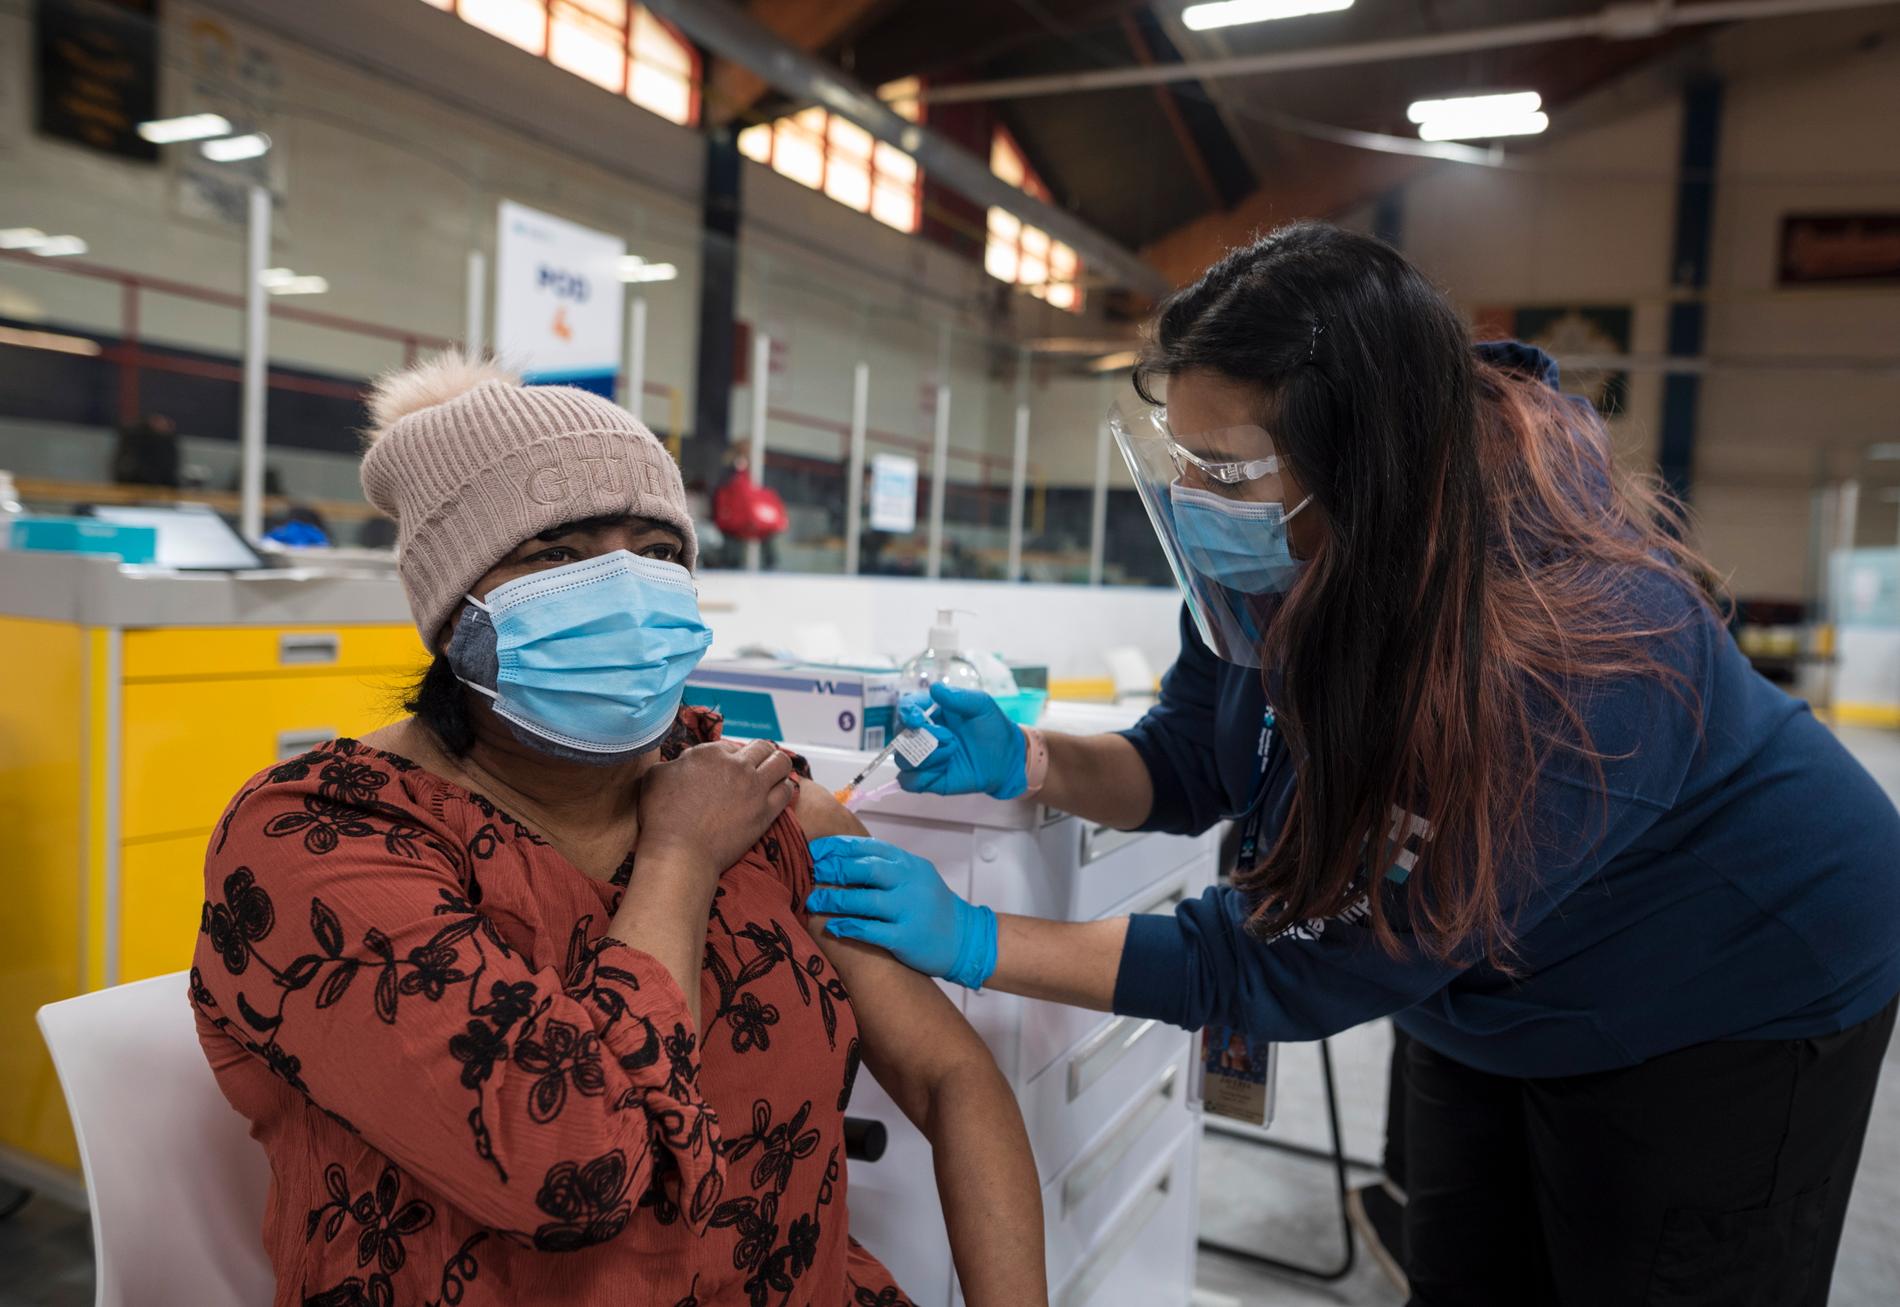 Javeria Jawed ger en vaccindos till Dularie Disram i Toronto, Ontario. Från och med i morgon tisdag uppges åldersgränsen för Astra Zenecas covidvaccin att sänkas till 40 år, enligt en regeringskälla.